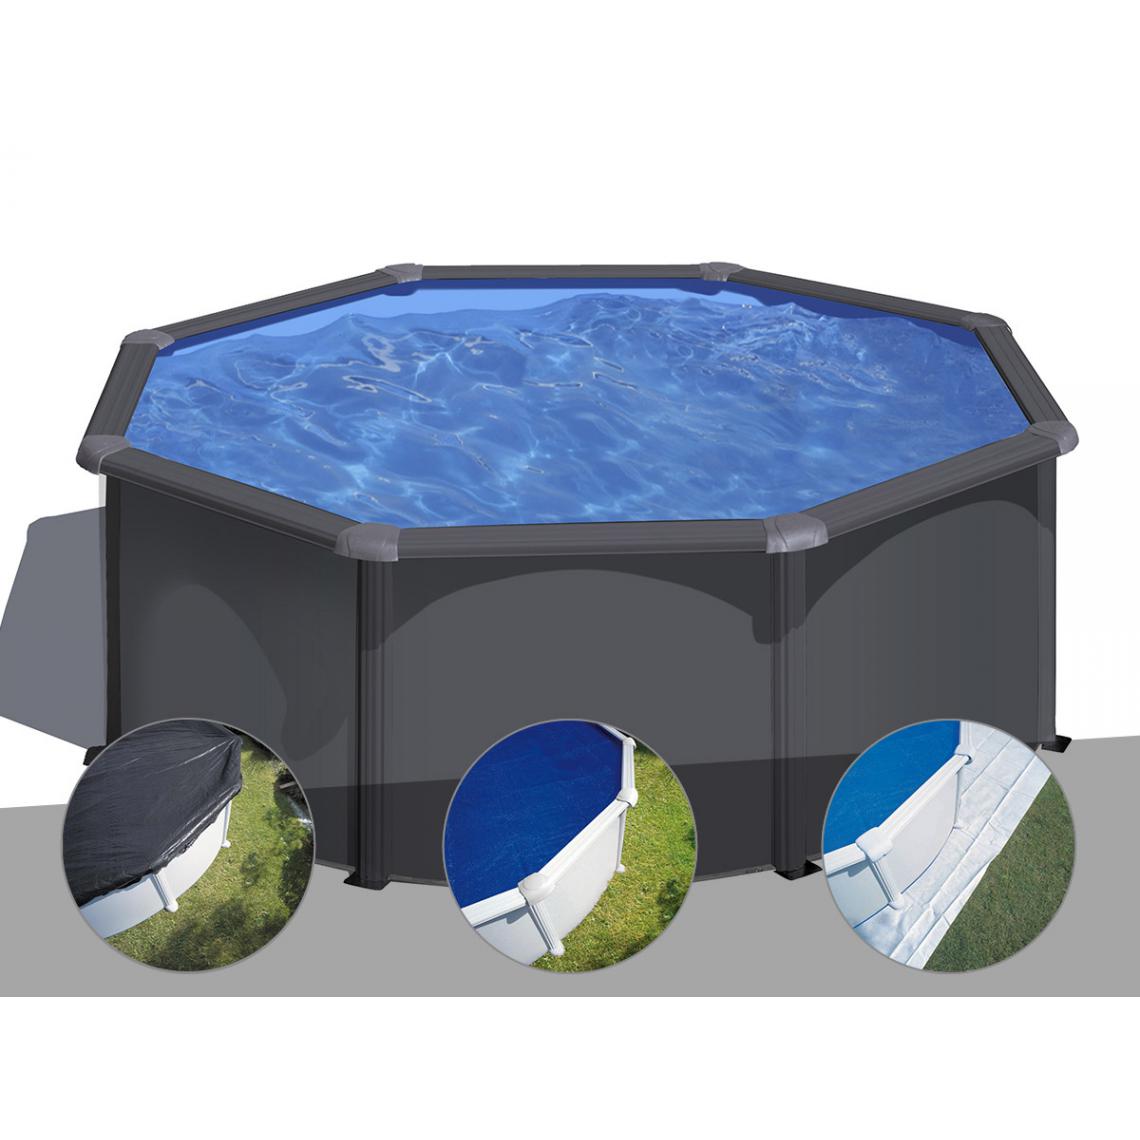 Gre - Kit piscine acier gris anthracite Gré Louko ronde 3,20 x 1,22 m + Bâche d'hivernage + Bâche à bulles + Tapis de sol - Piscines acier et résine